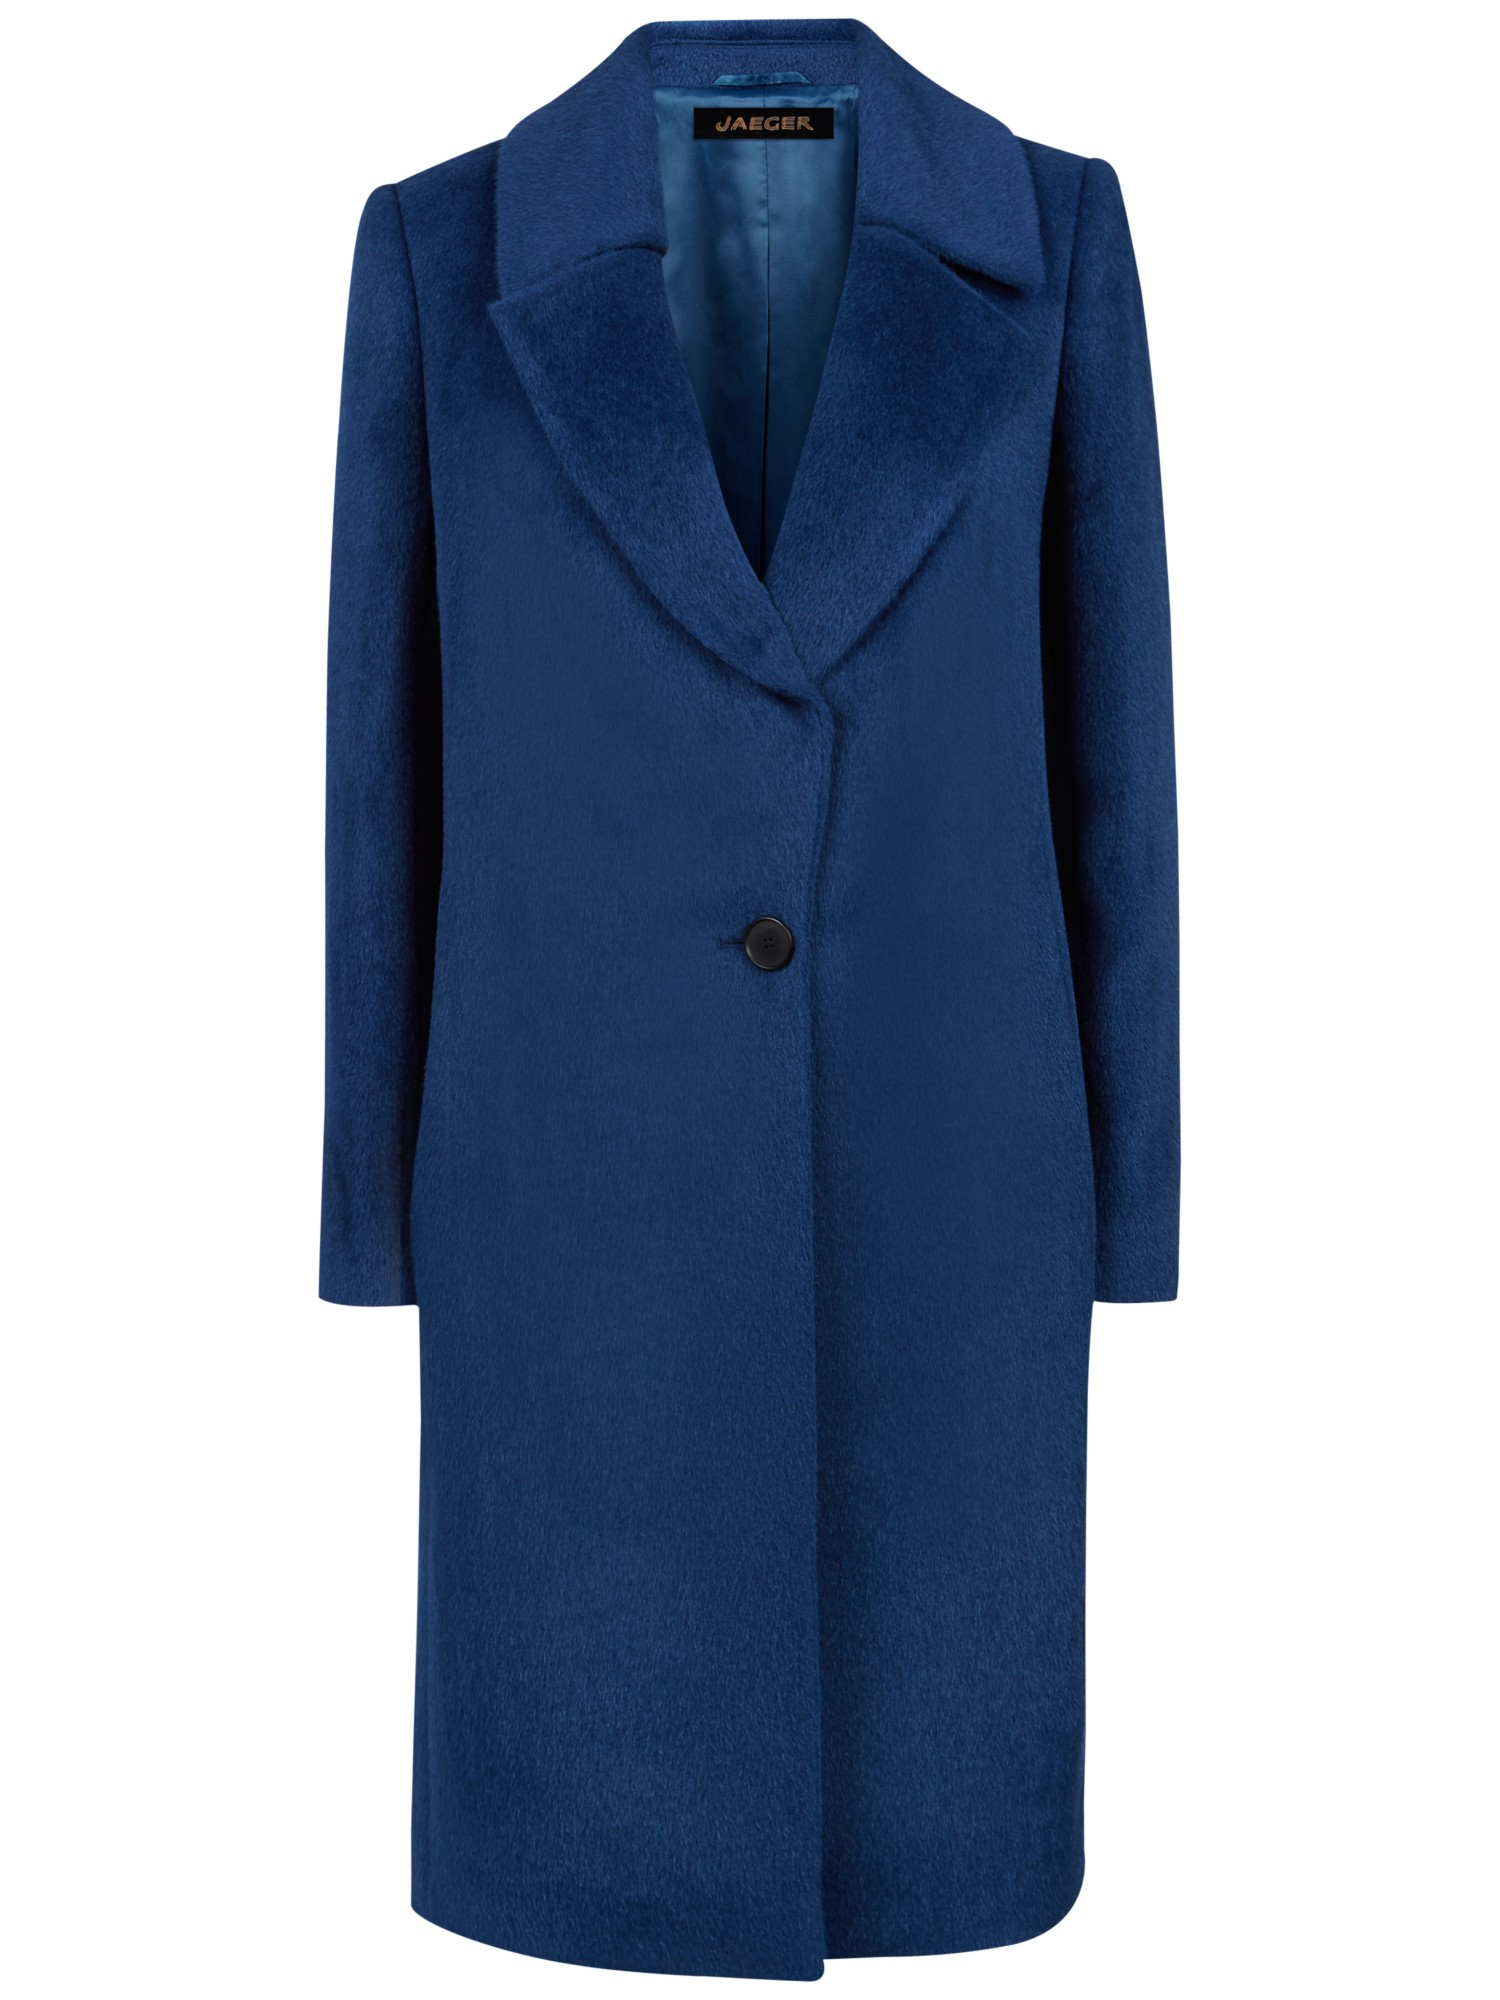 Jaeger Alpaca Wool Blend Crombie Coat in Blue (Ocean Blue) | Lyst